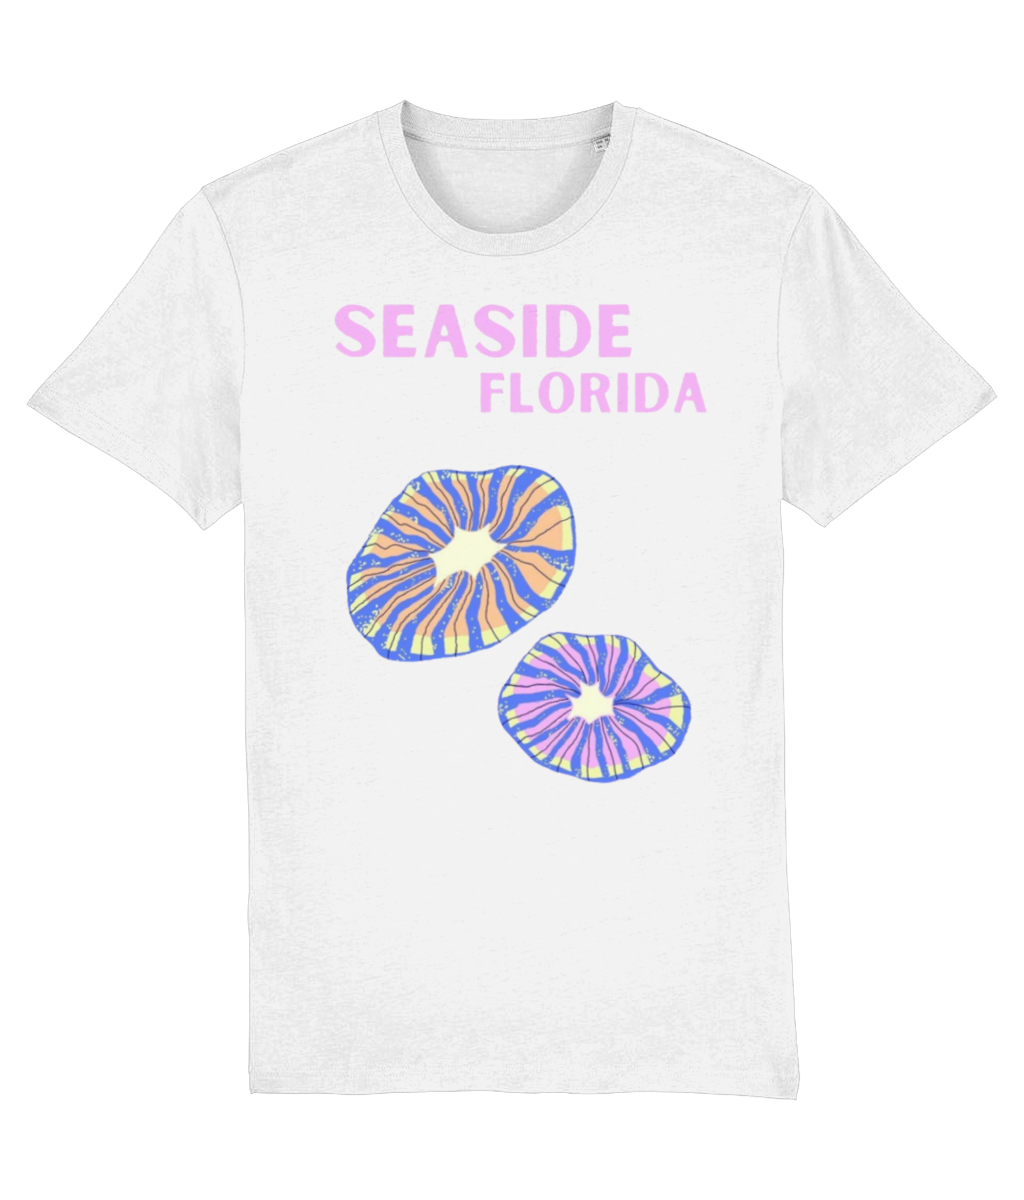 SEASIDE FLORIDA SHIRT